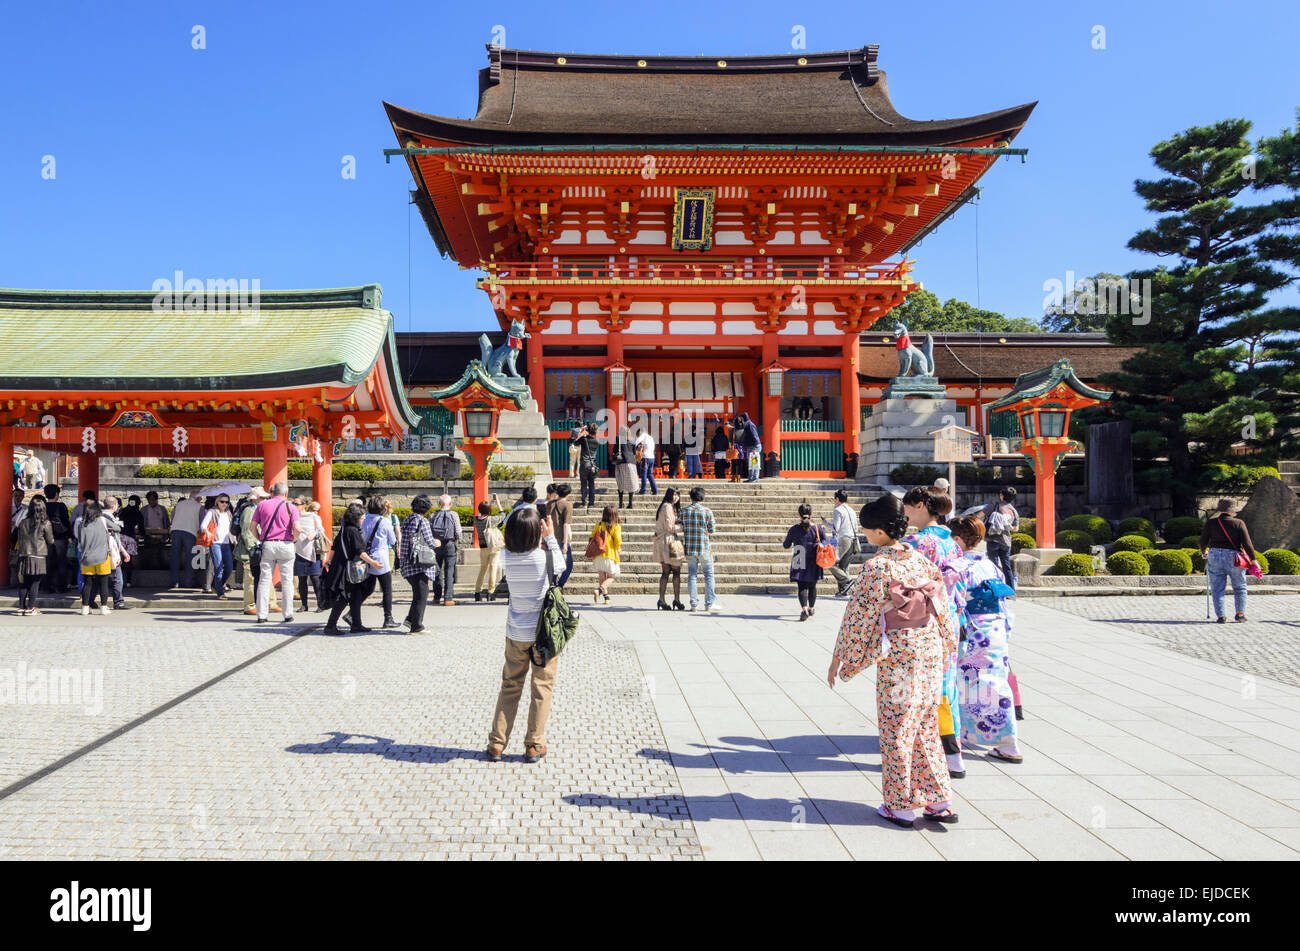 Traditionell gekleidete Japanerinnen zu Fuß in Richtung der Turmtor am Fushimi Inari Schrein, Kyoto, Japan Stockfoto